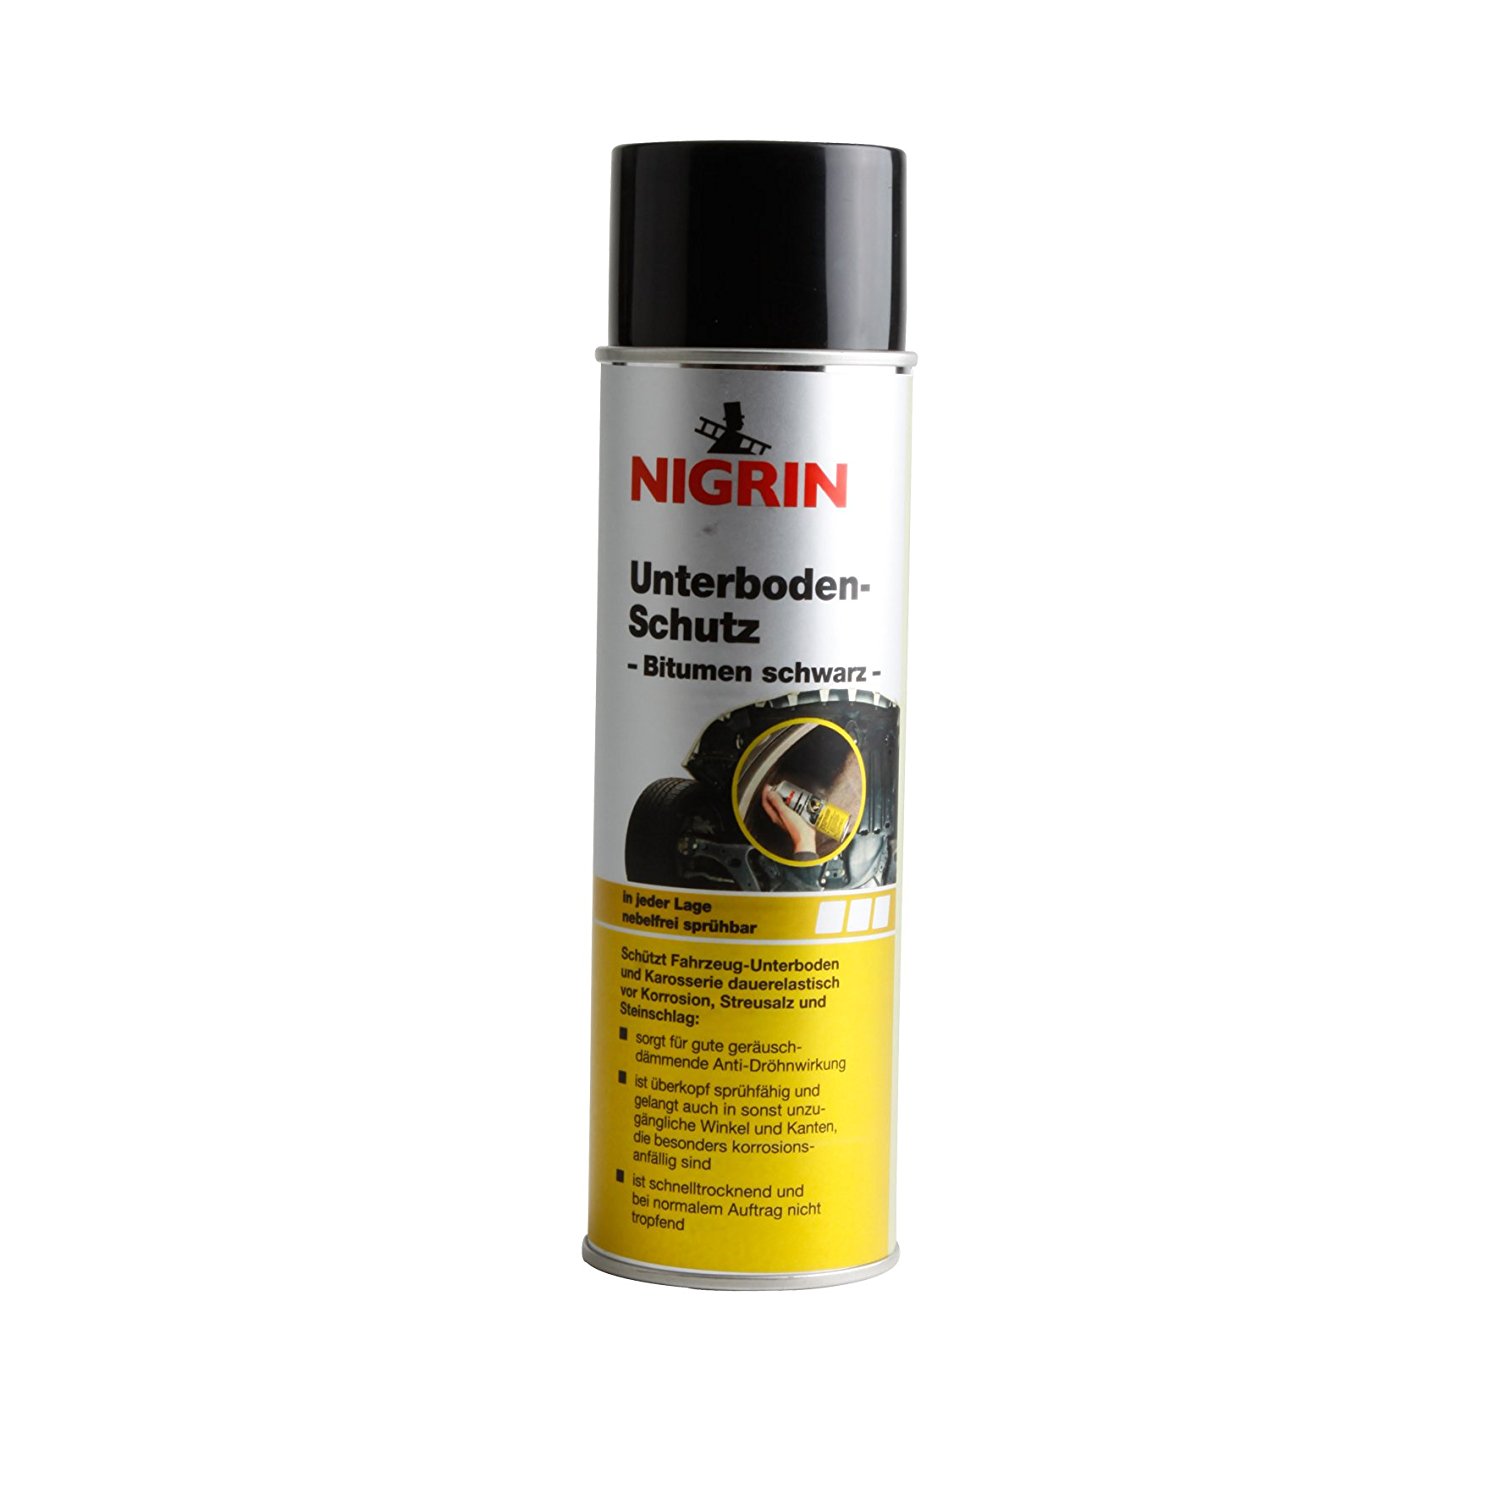 Nigrin Unterbodenschutz Bitumen schwarz 500 ml